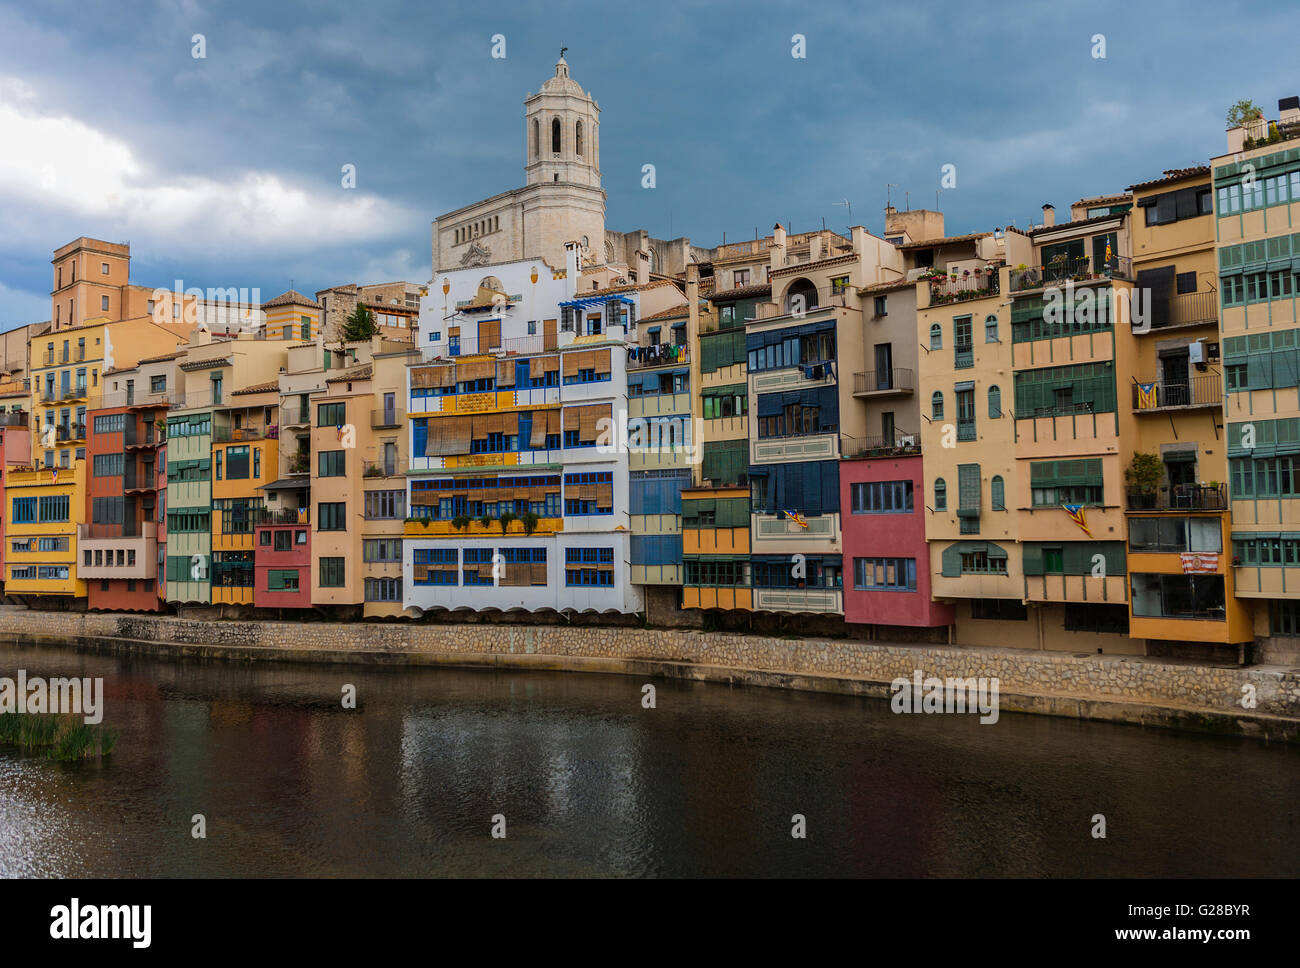 RIVER SIDE CITY OF GIRONA. CATALONIA. SPAIN. Stock Photo